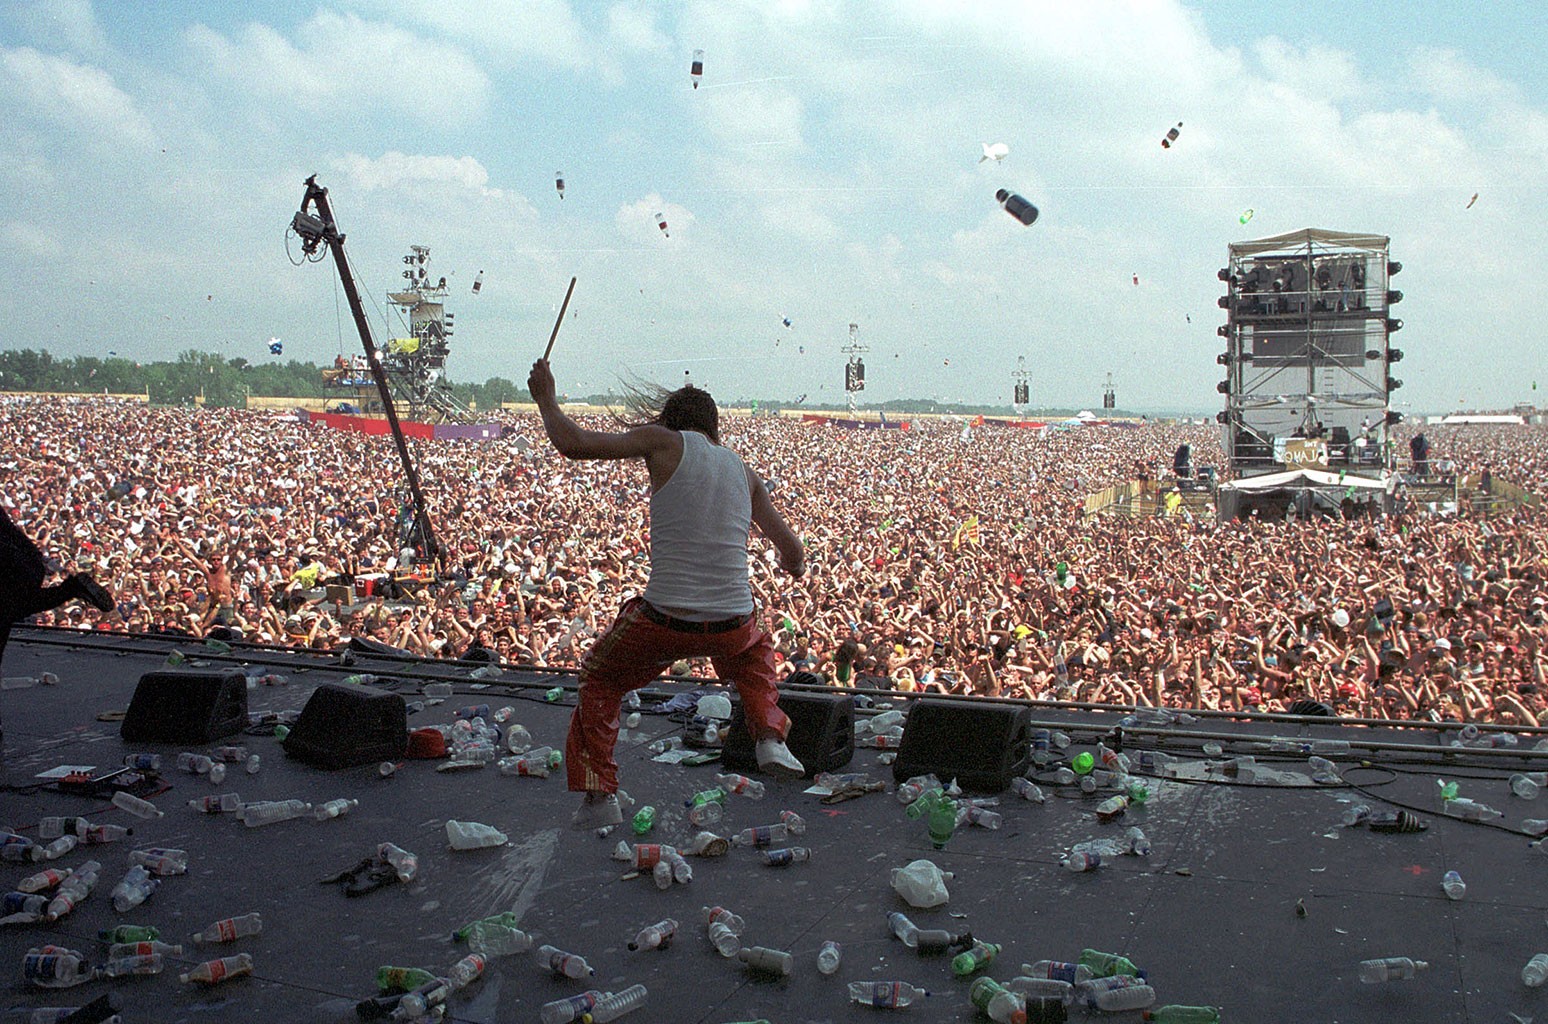 Lanzamiento de botellas al escenario en el festival de Woodstock